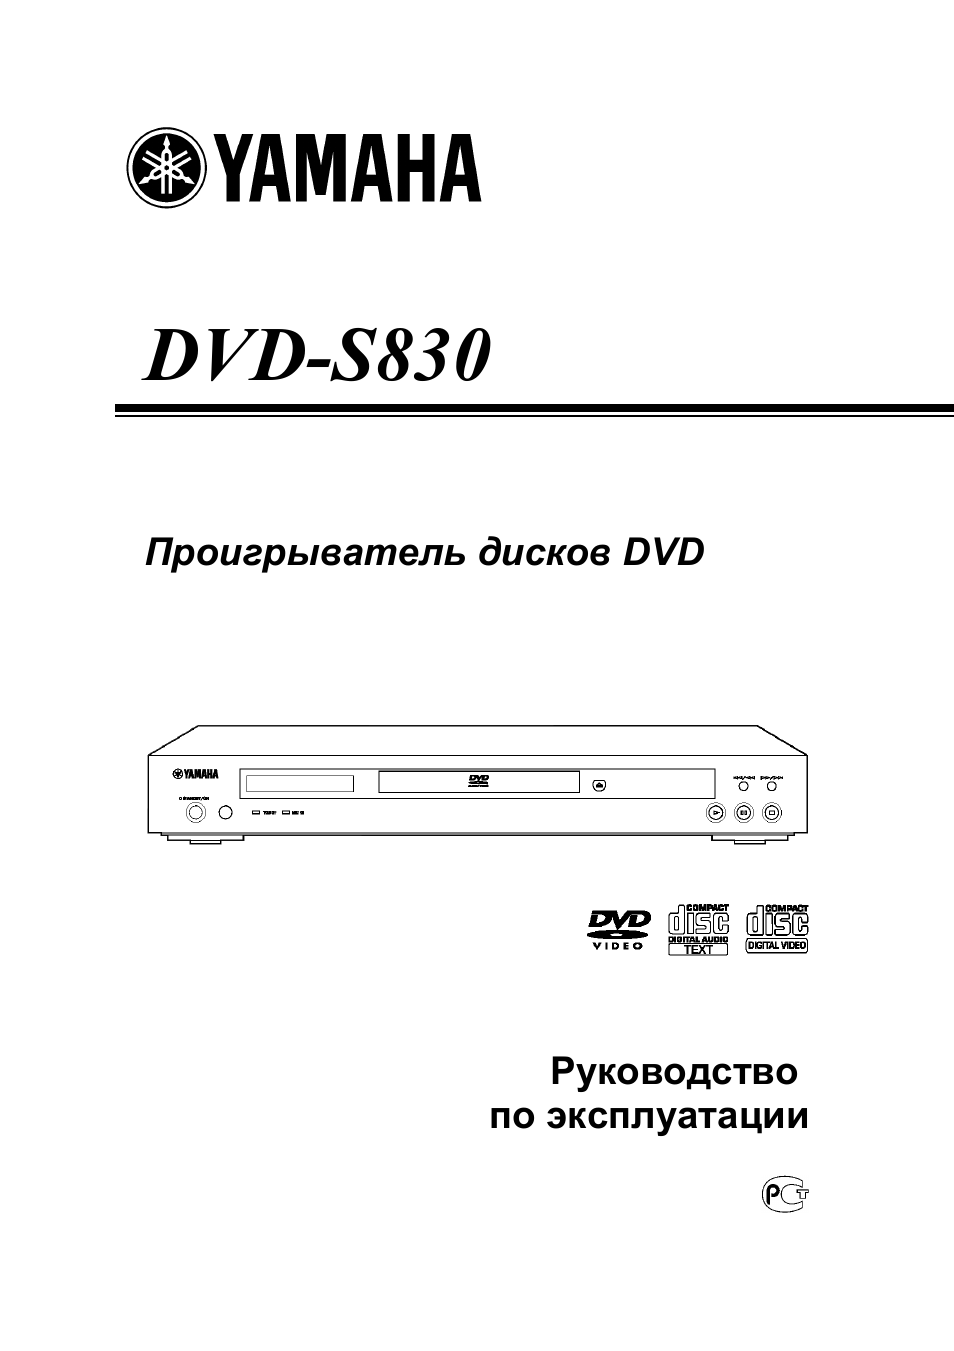 Инструкция по эксплуатации Yamaha DVD-S830 | 18 страниц